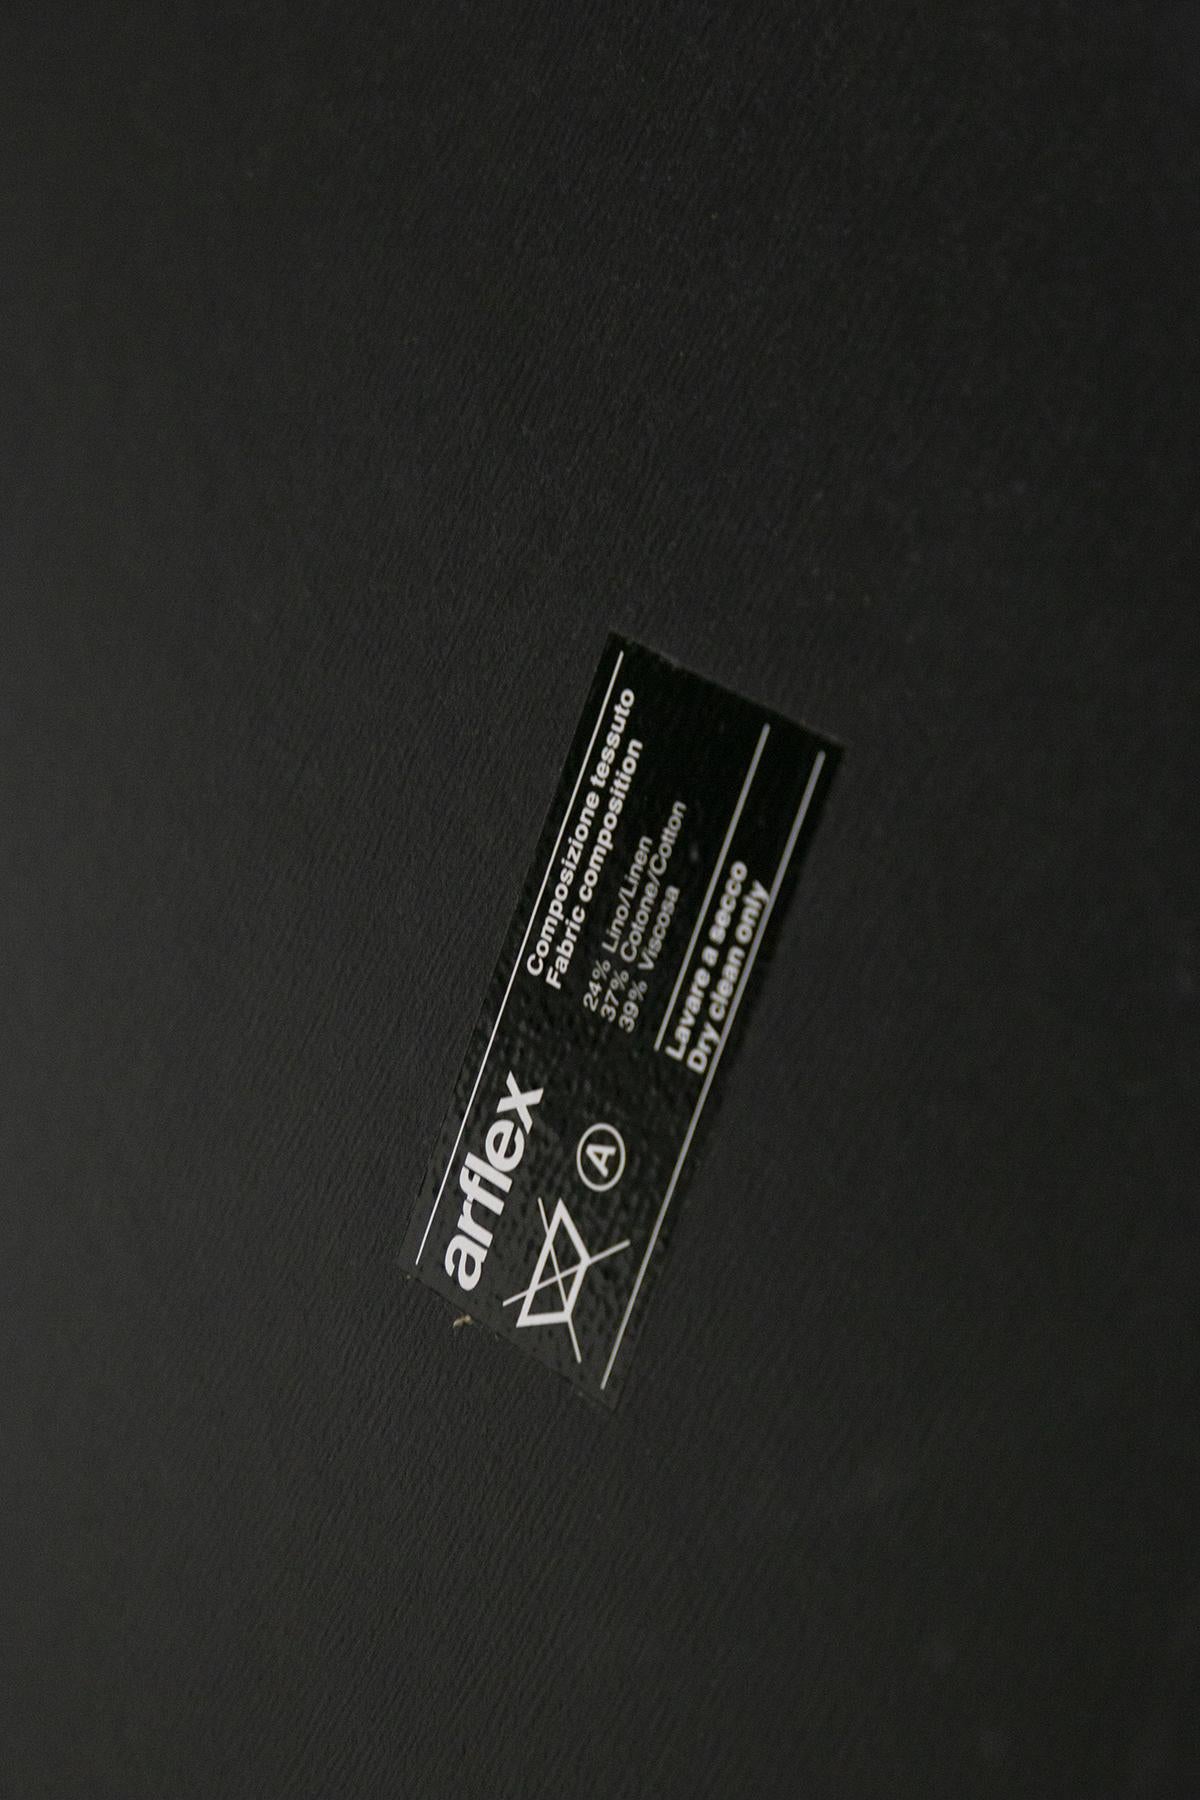 Cini Boeri Mid-Century Single Bed for Arflex, Original Label In Good Condition For Sale In Milano, IT